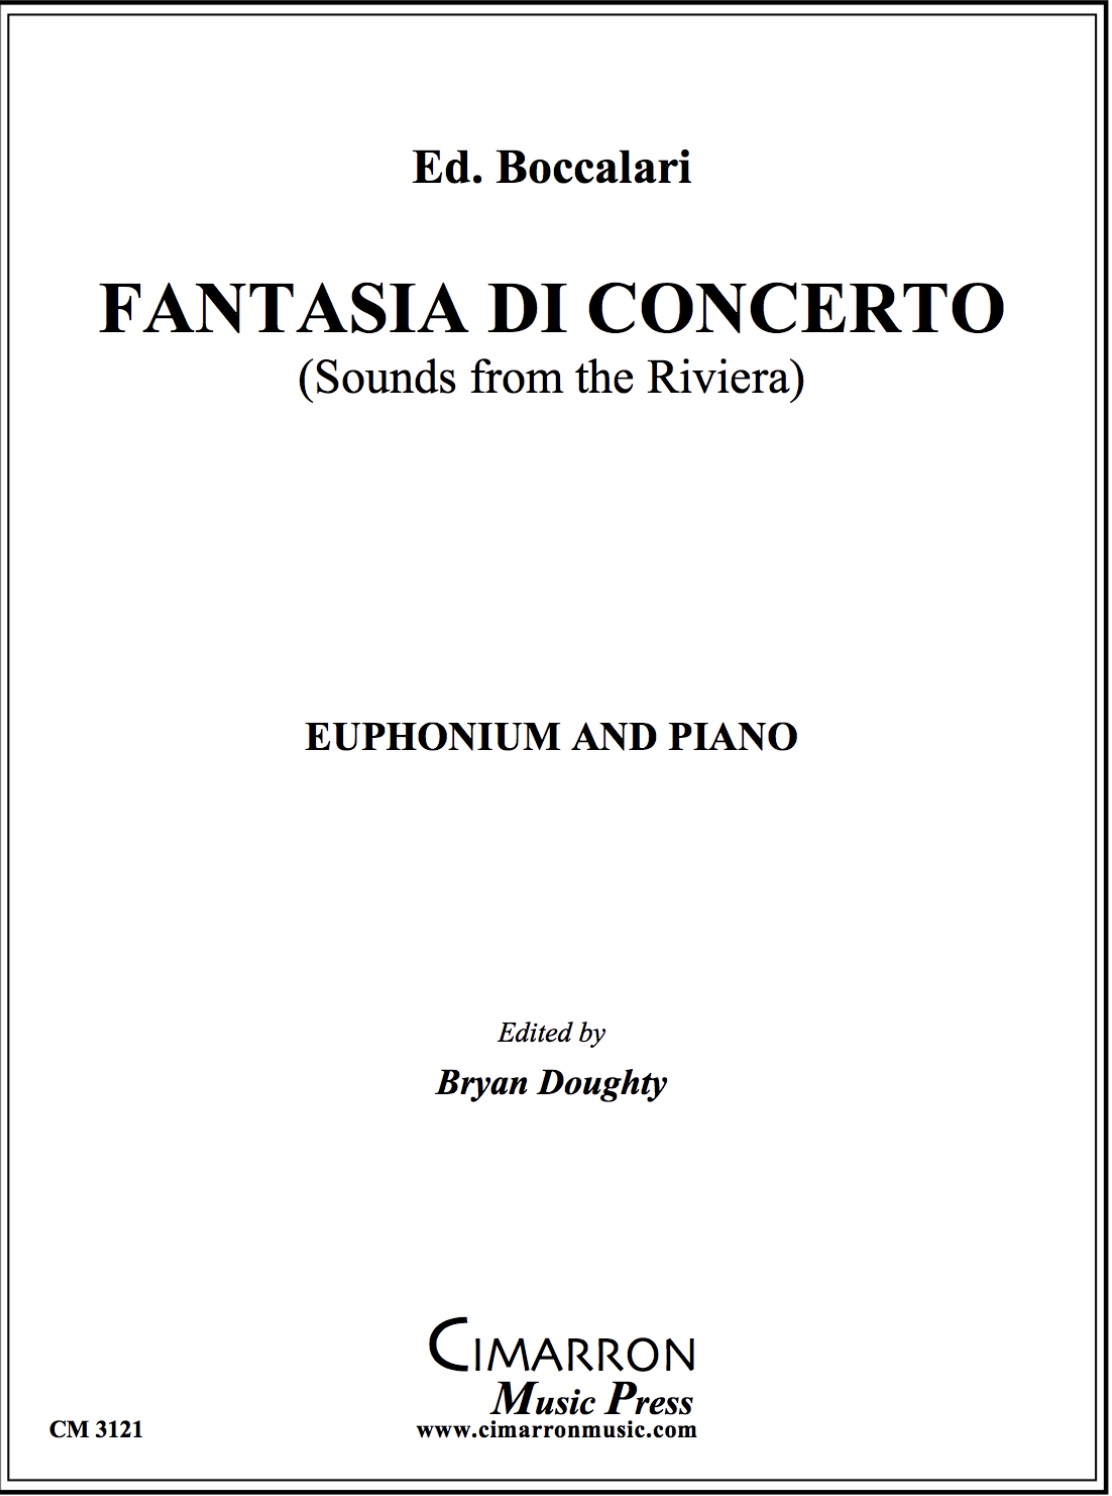 Fantasia Di Concerto (Sounds from the Riviera) - Ed. Boccalari - Euphonium and Piano